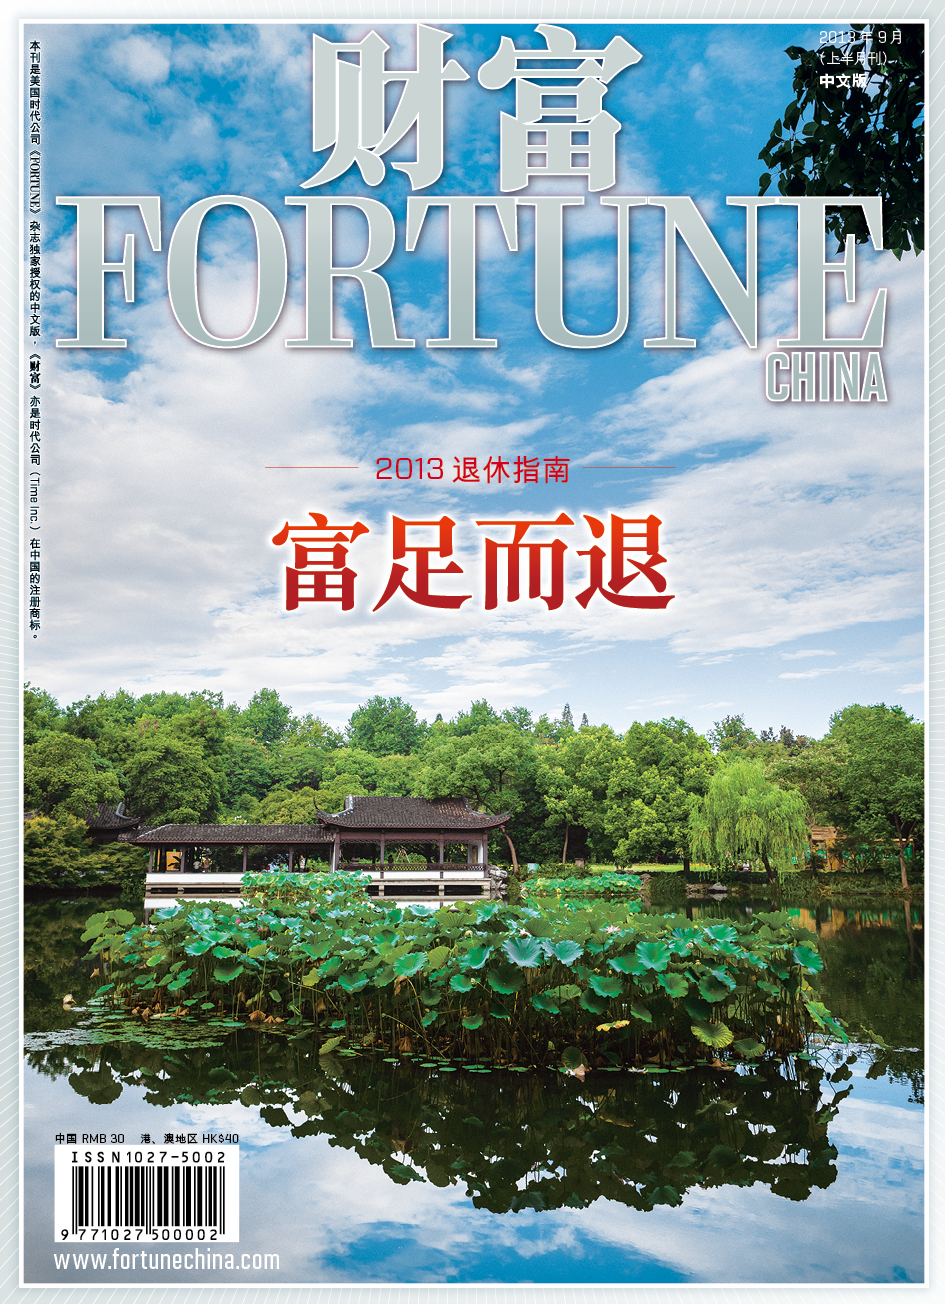 Fortune Sept 2013.jpg